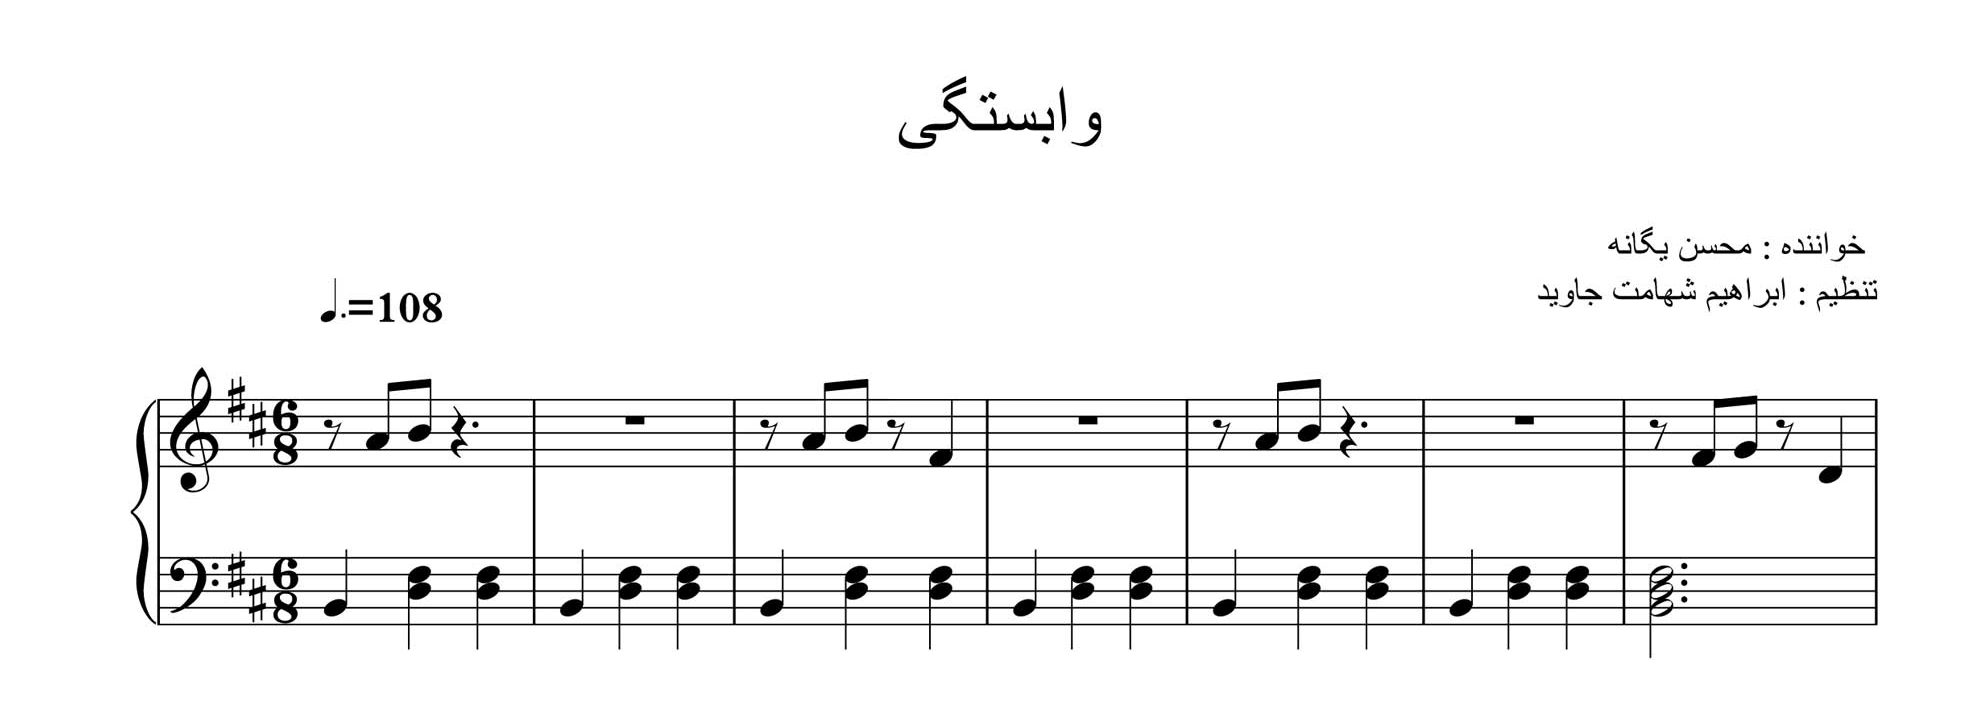 نت پیانوی آهنگ وابستگی محسن یگانه